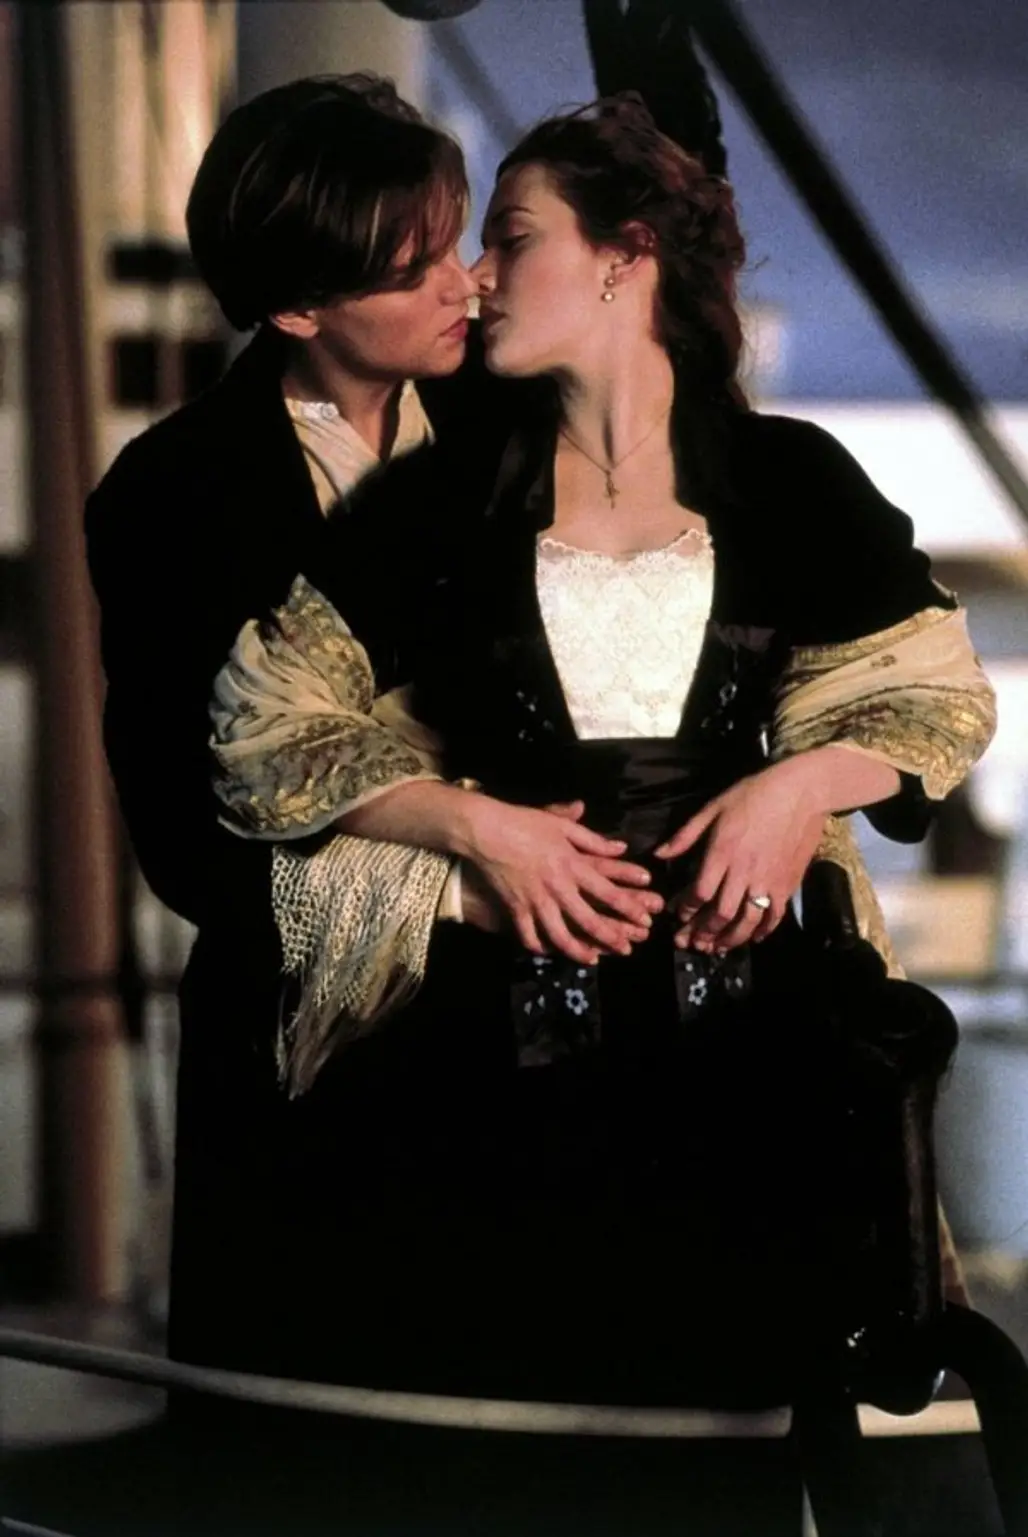 Leonardo DiCaprio & Kate Winslet in "Titanic"